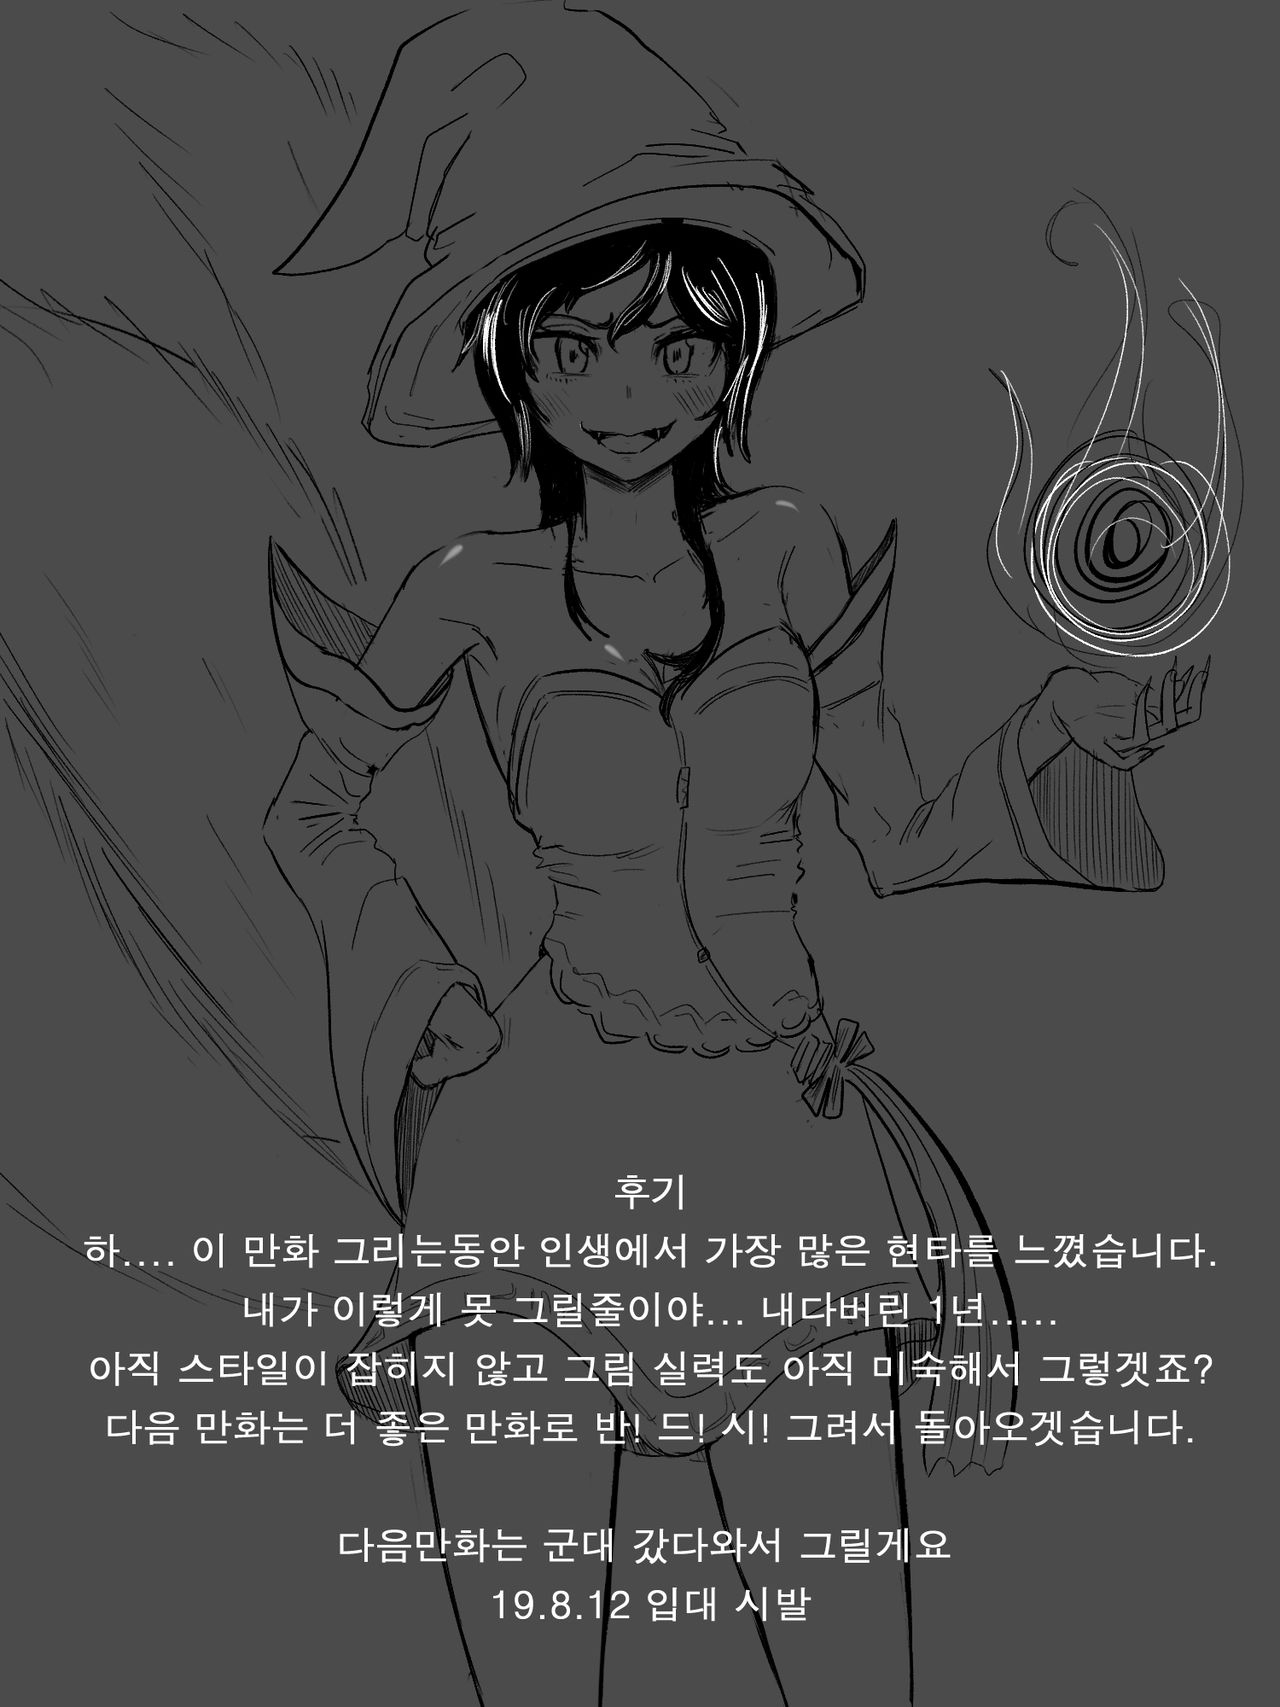 [legfetish] 이즈 럭스 떡인지 (League of Legends) [Korean] 20